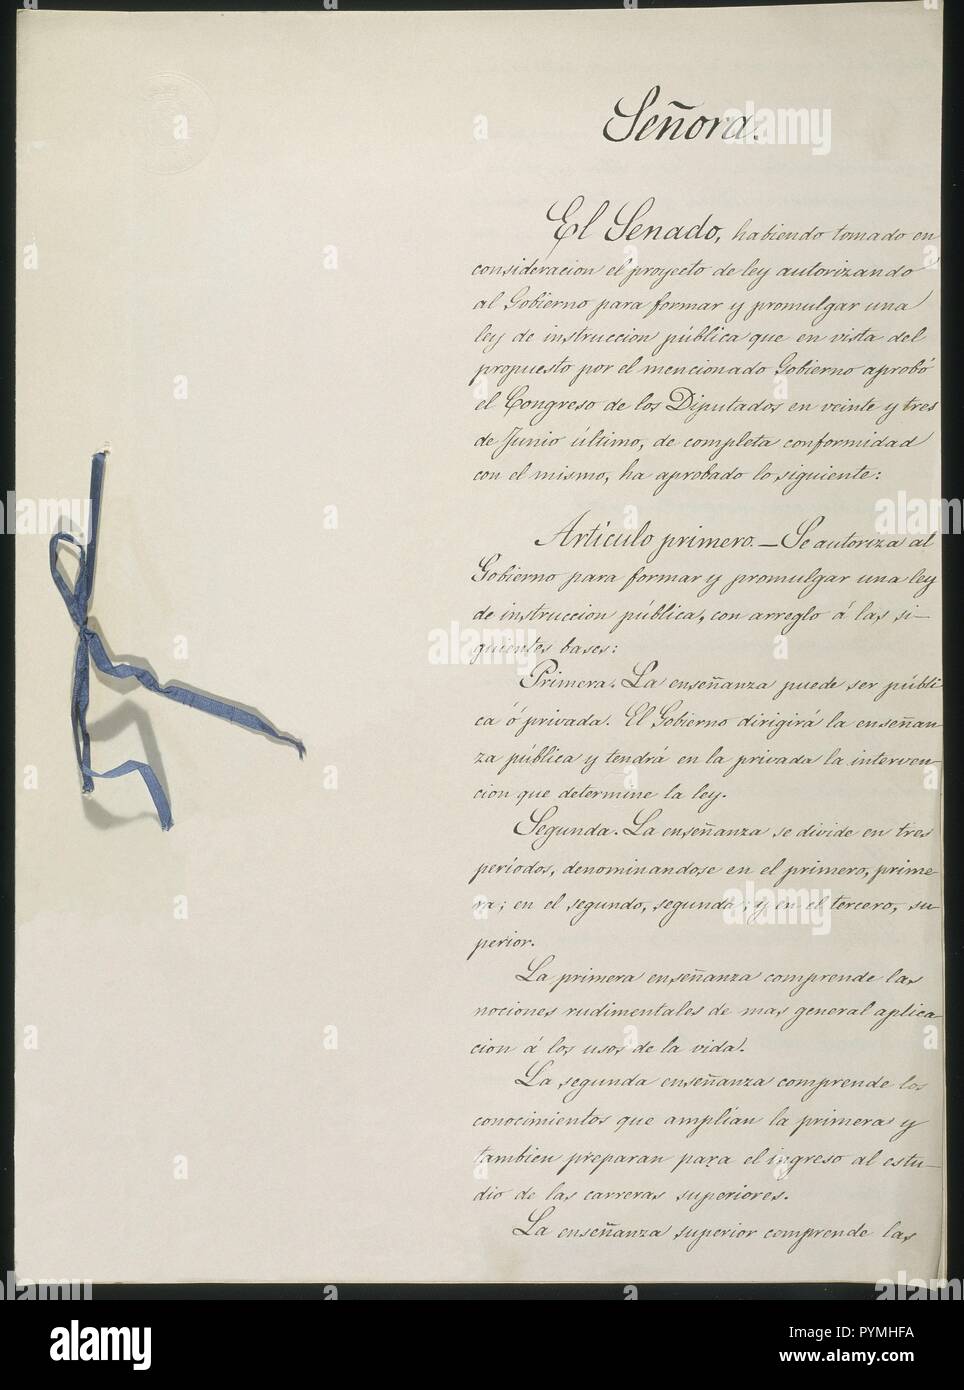 LEY DE INSTRUCCION PUBLICA DE 1857 - PRIMERA PAGINA. Location: CONGRESO DE LOS DIPUTADOS-BIBLIOTECA. MADRID. SPAIN. Stock Photo